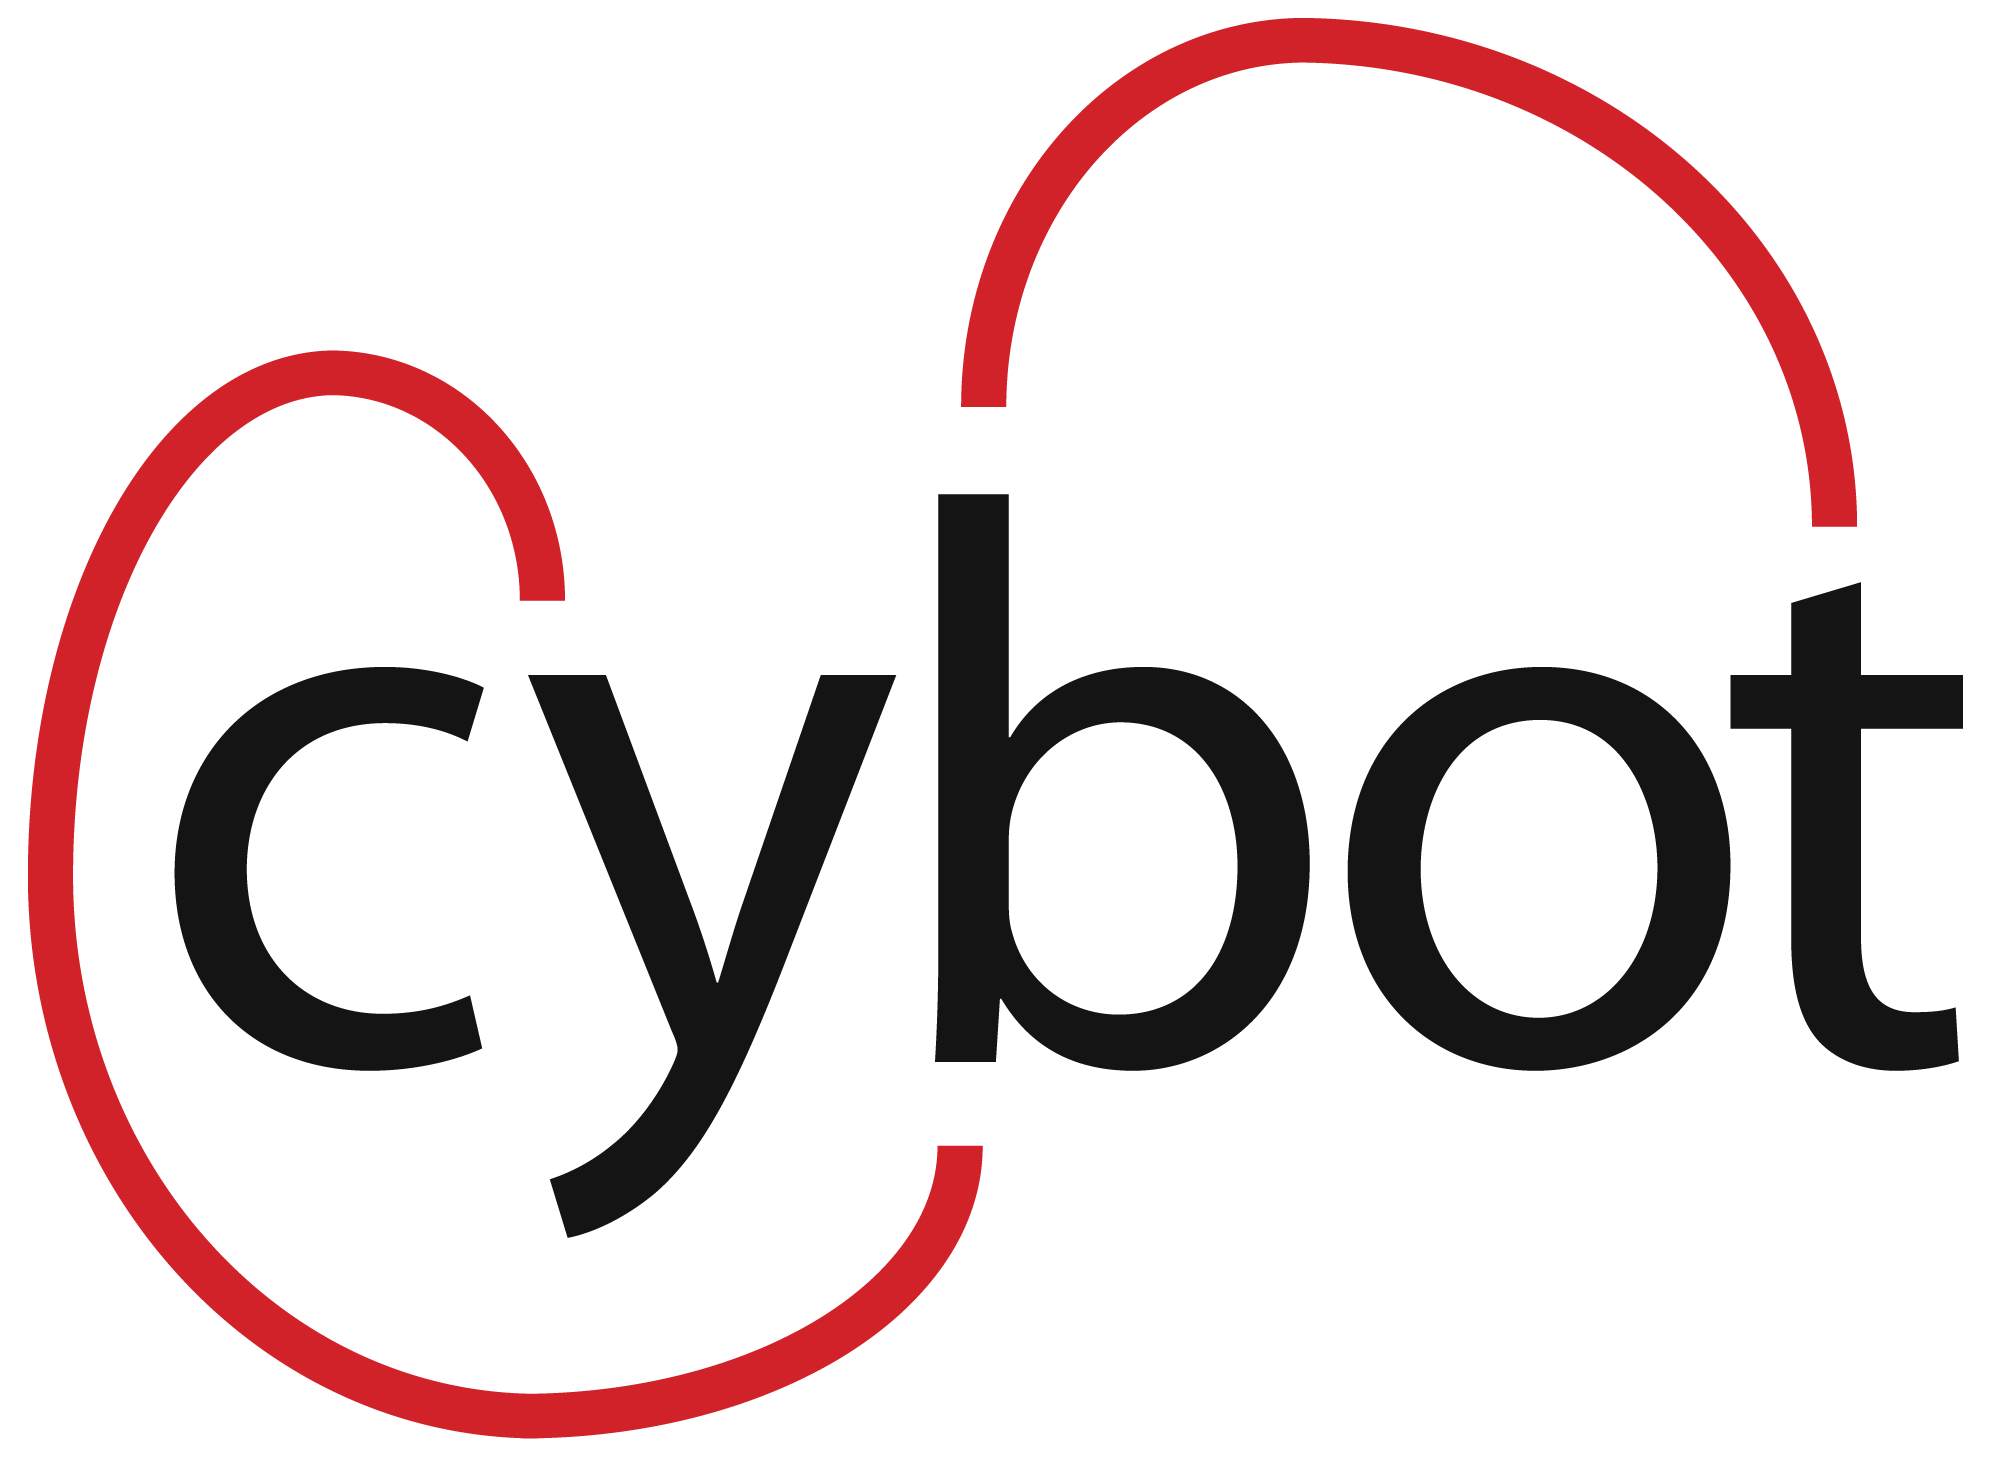 Cybot logo